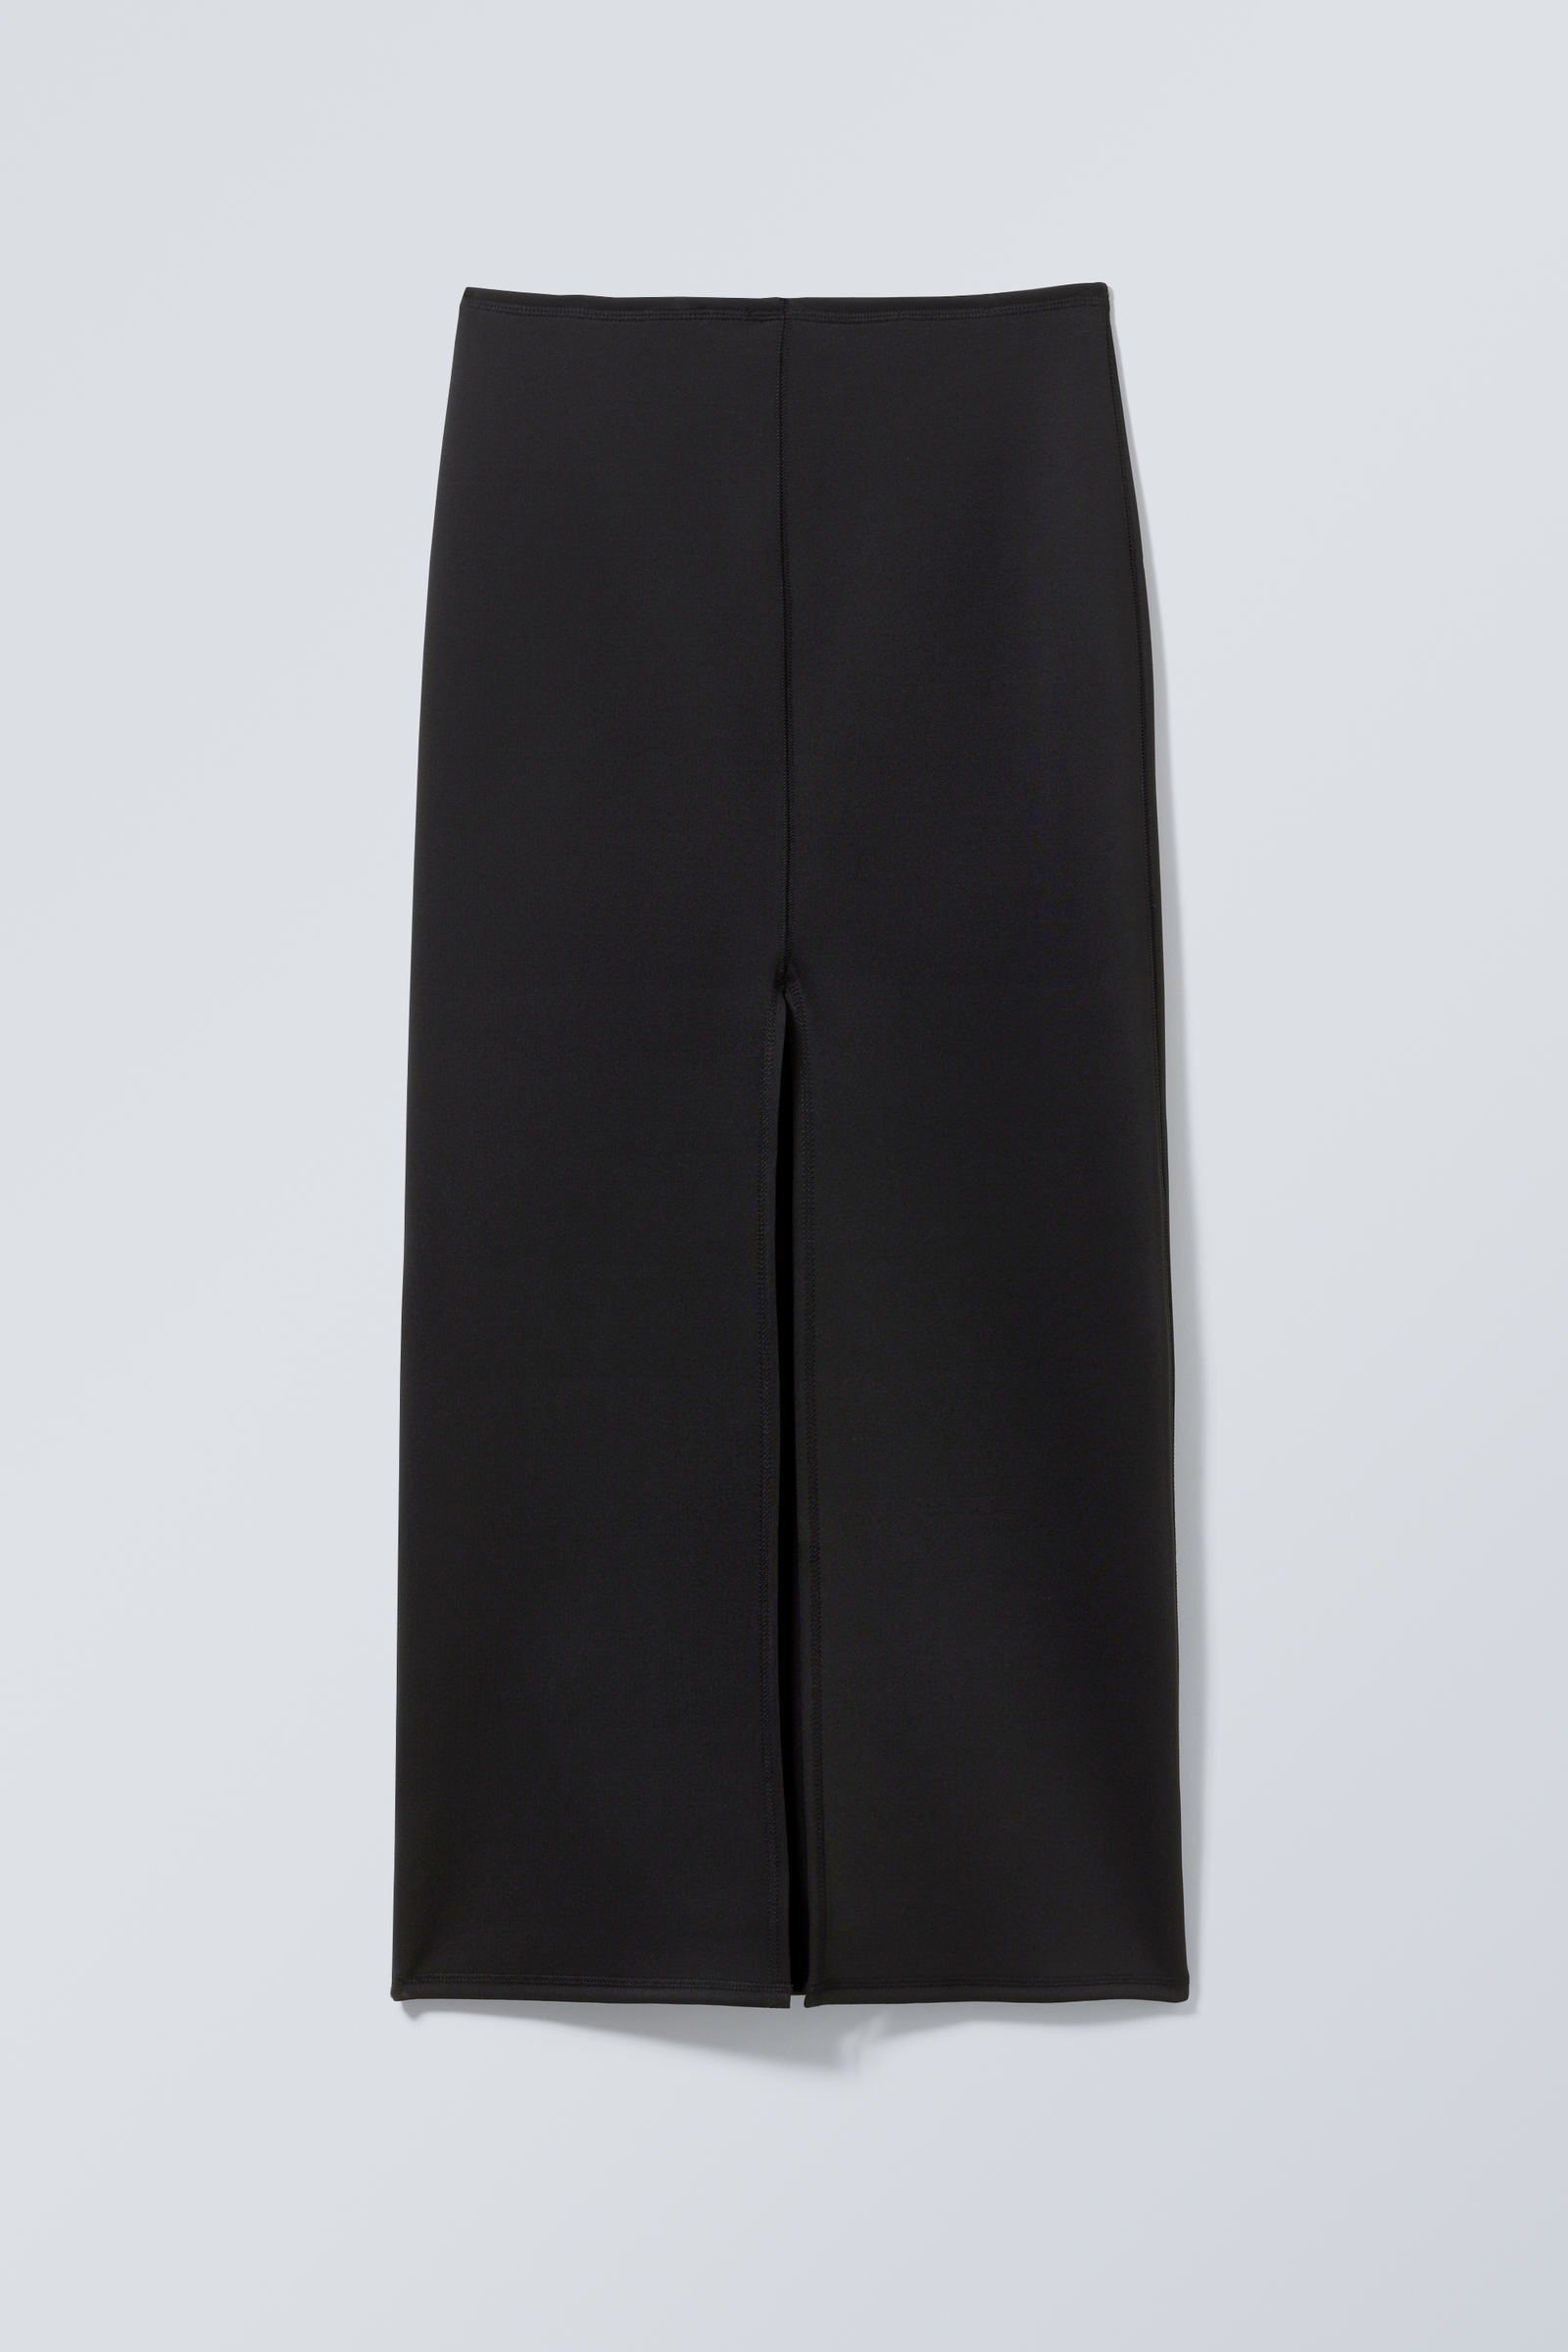 #272628 - Minimal Long Skirt - 2